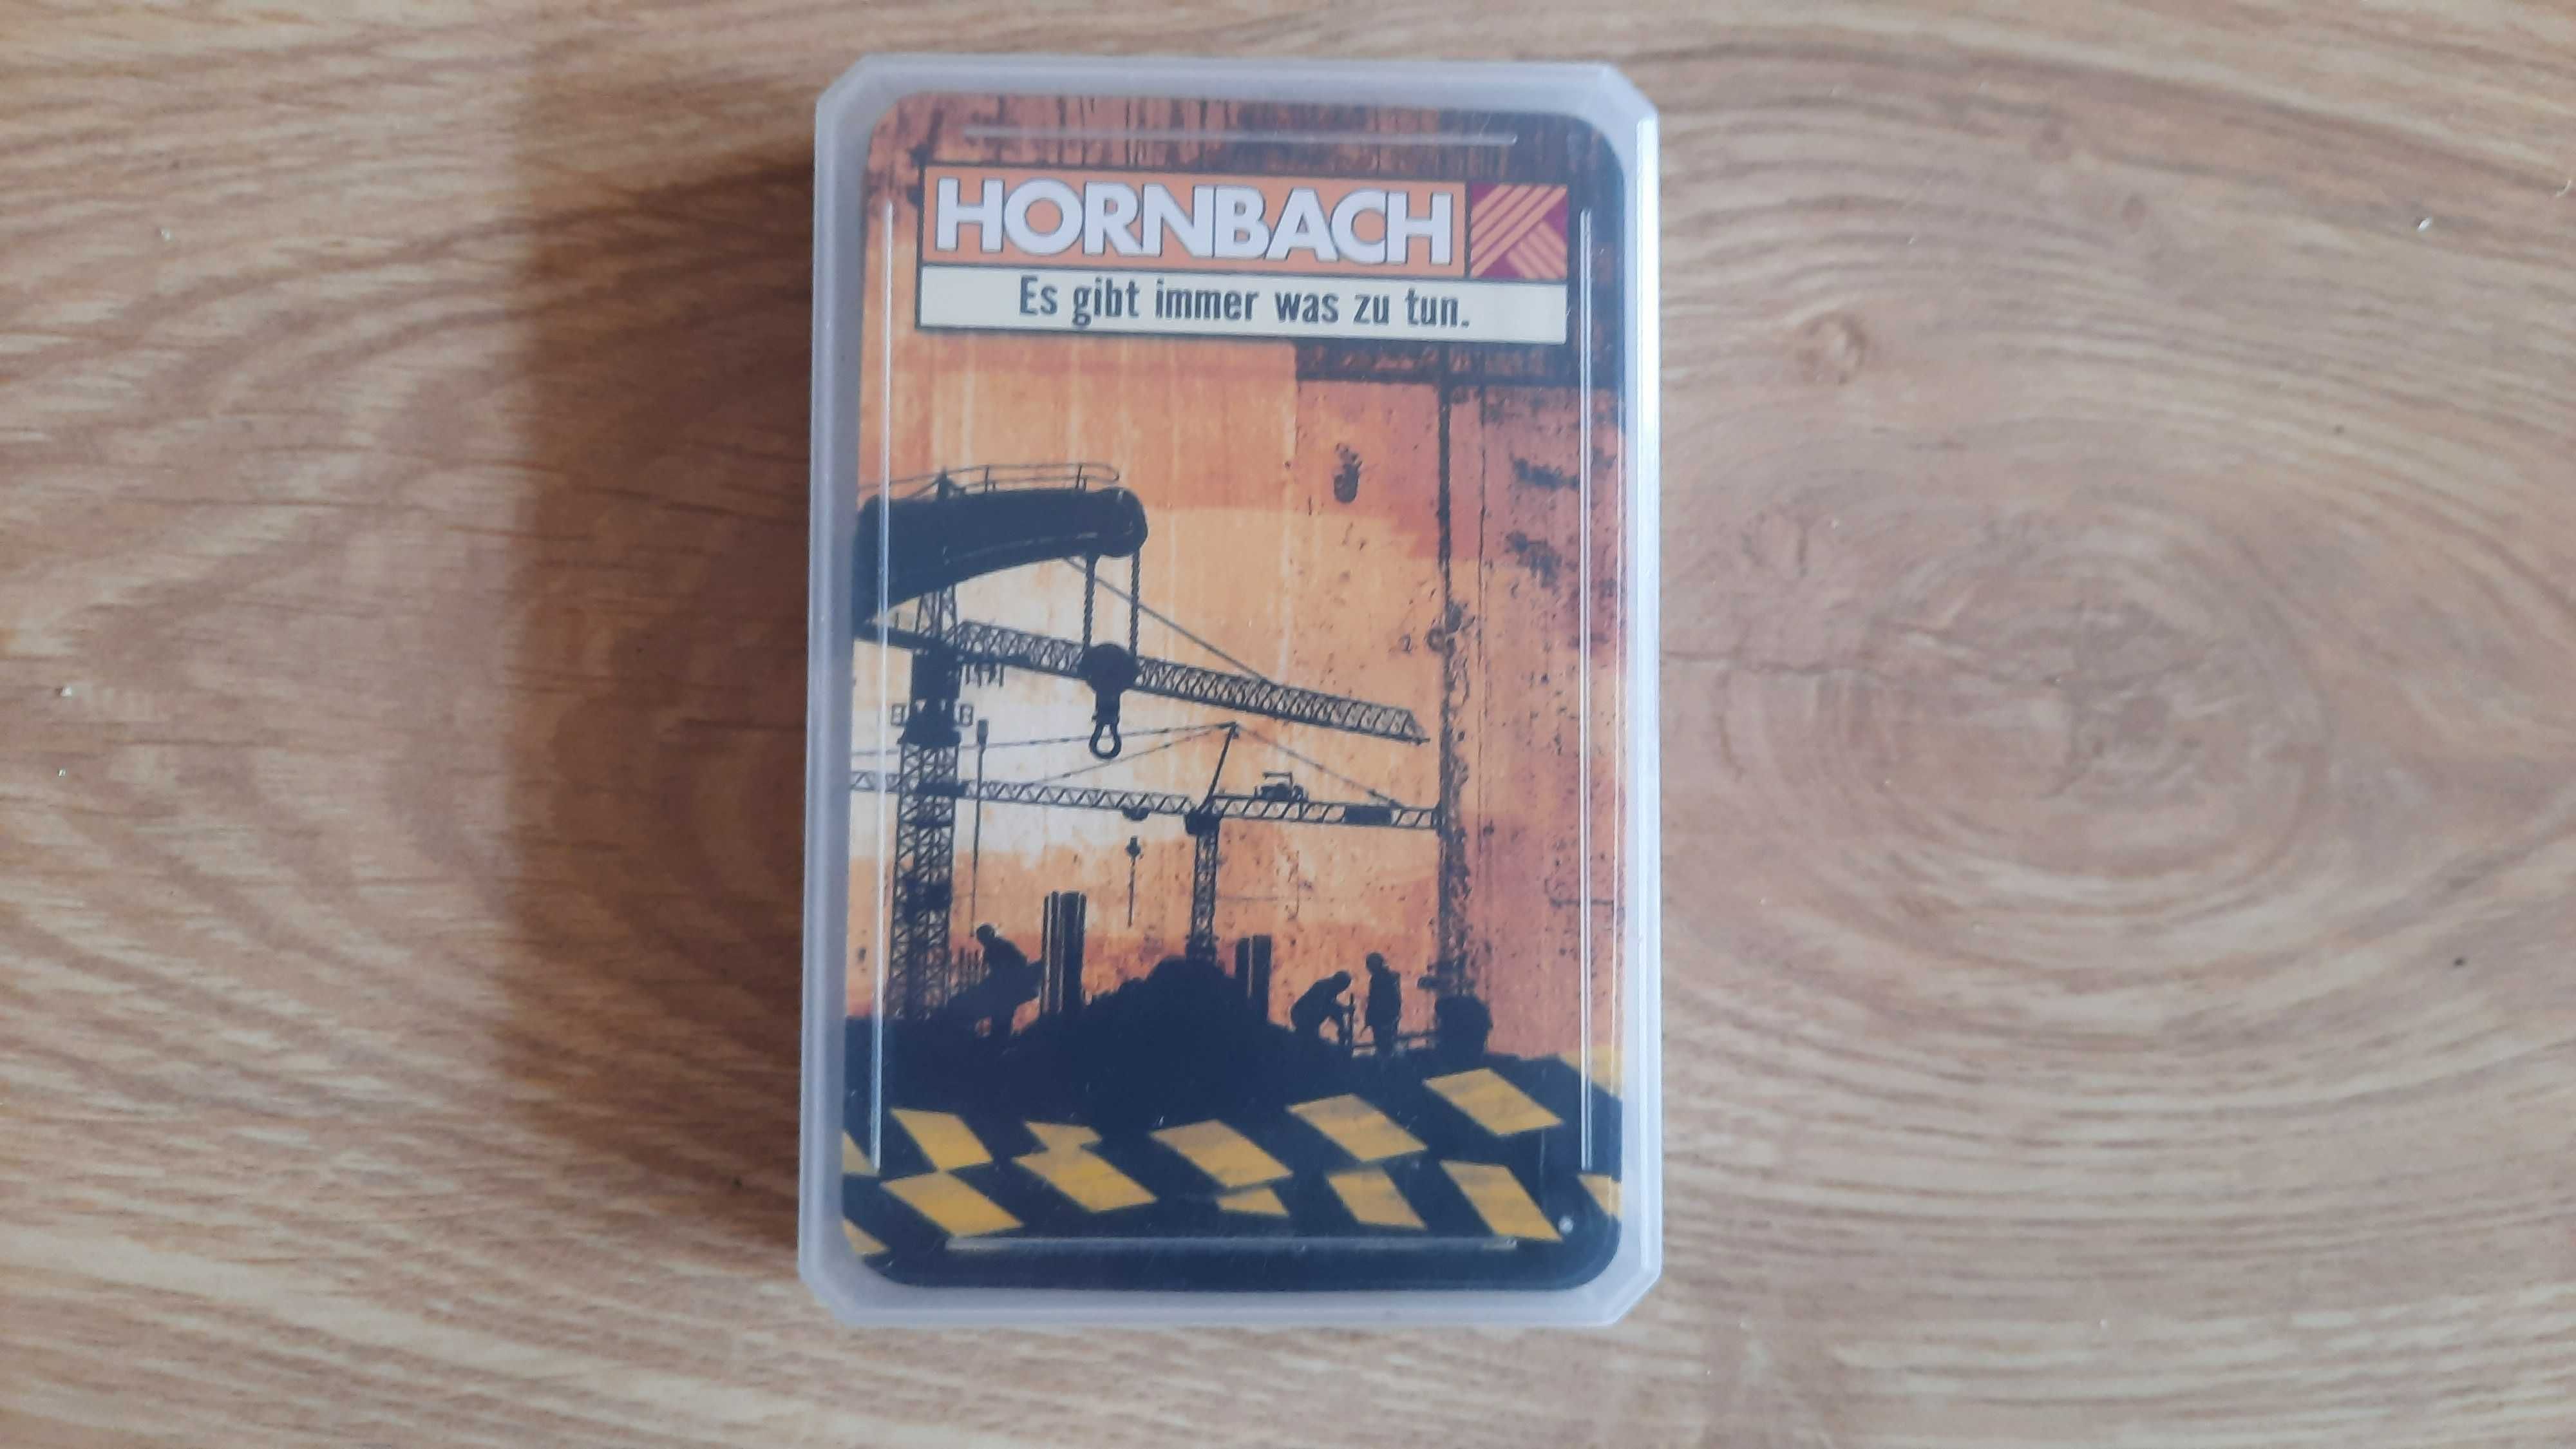 karty do gry plastikowe, reklama firmy HORNBACH